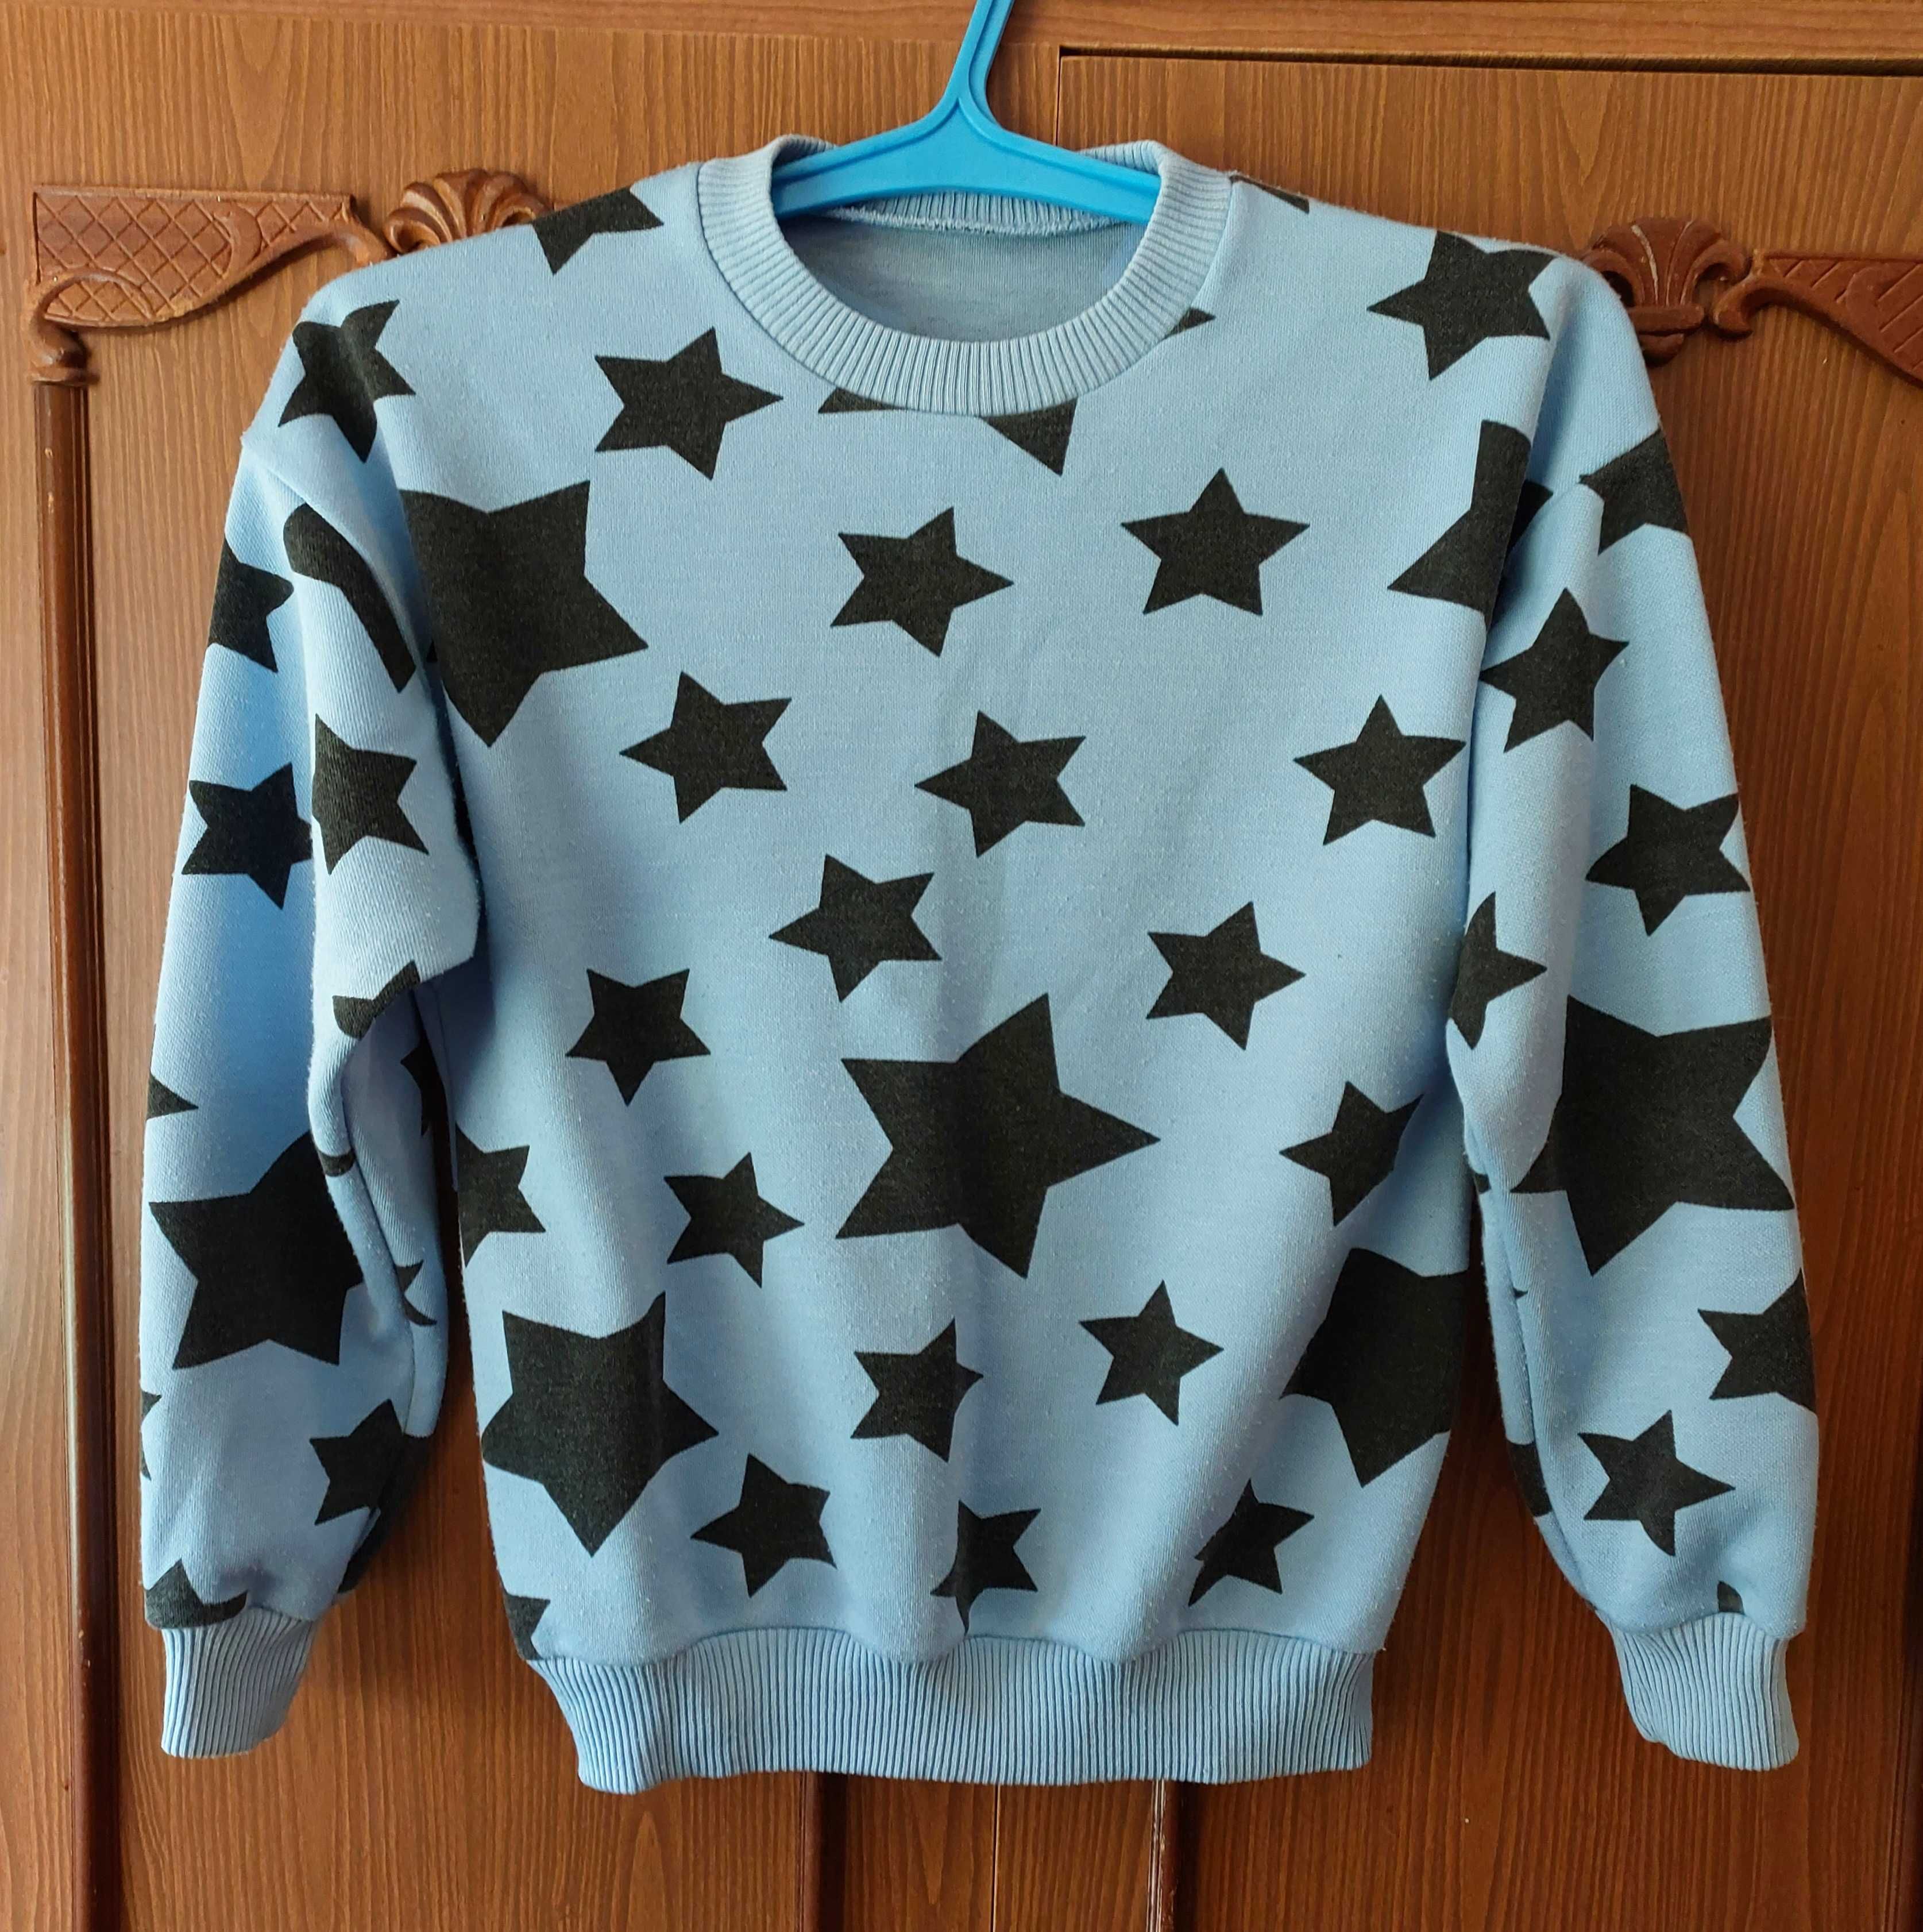 Джемпер голуб цвета с черными звездами   Пуловер женский серого цвета